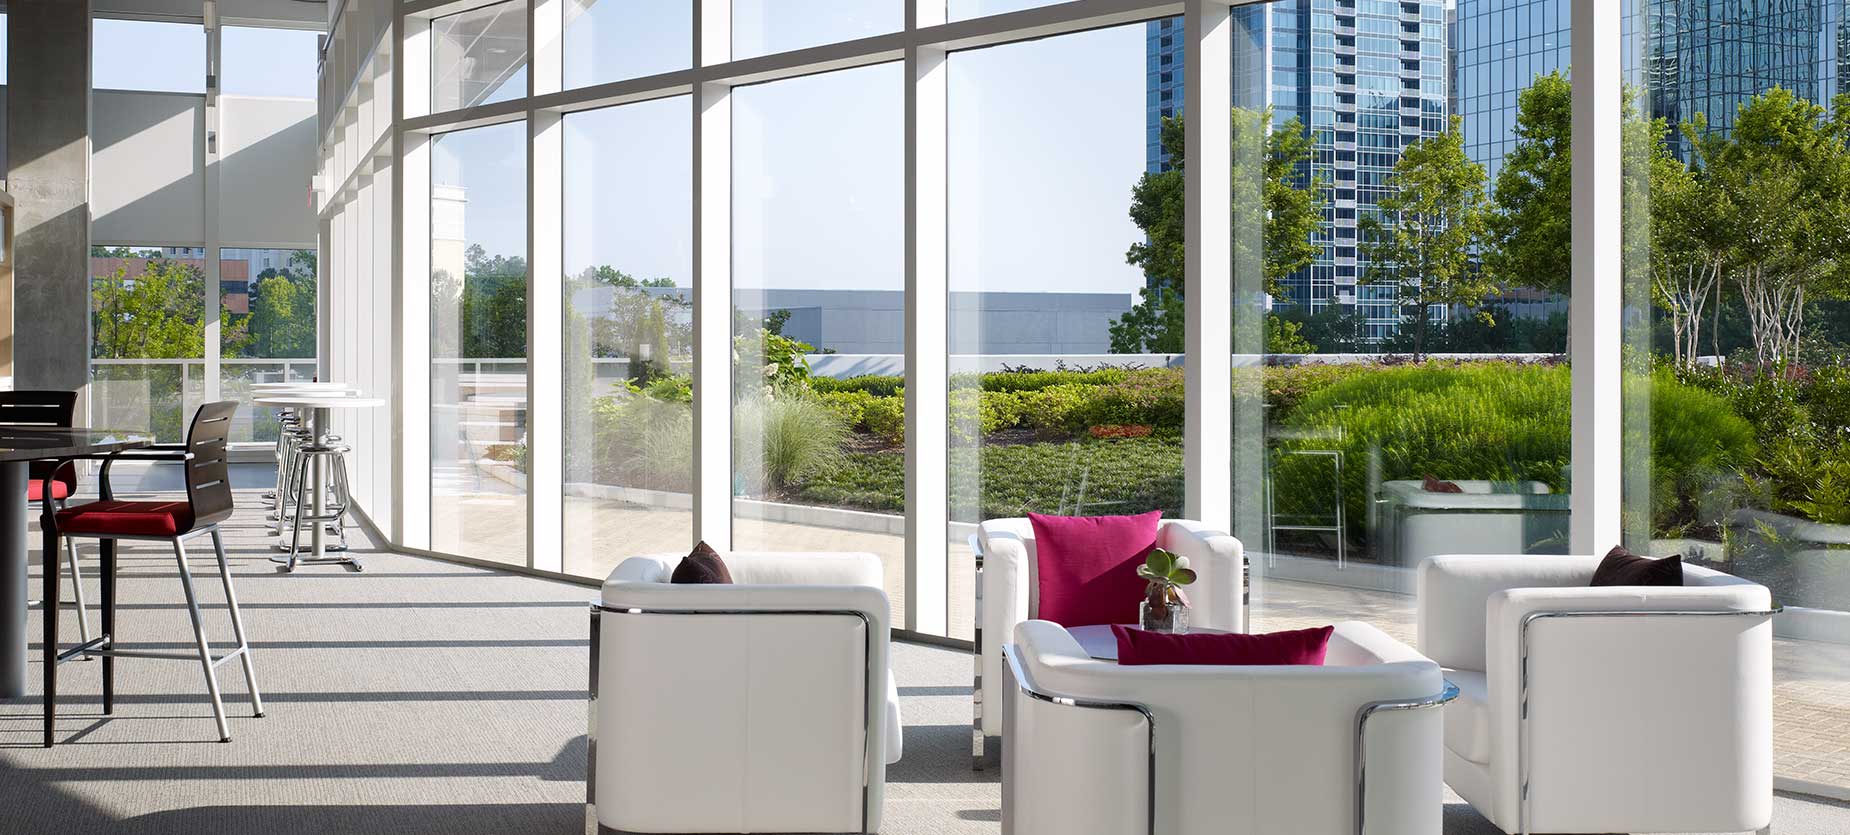 Este espacio dedicado a la interacción social cuenta con cómodas soluciones de asiento para una amplia variedad de posturas, lo que fomenta la interacción y la colaboración. Las vistas de los edificios de Atlanta y de los jardines exteriores contribuyen a crear ambiente.